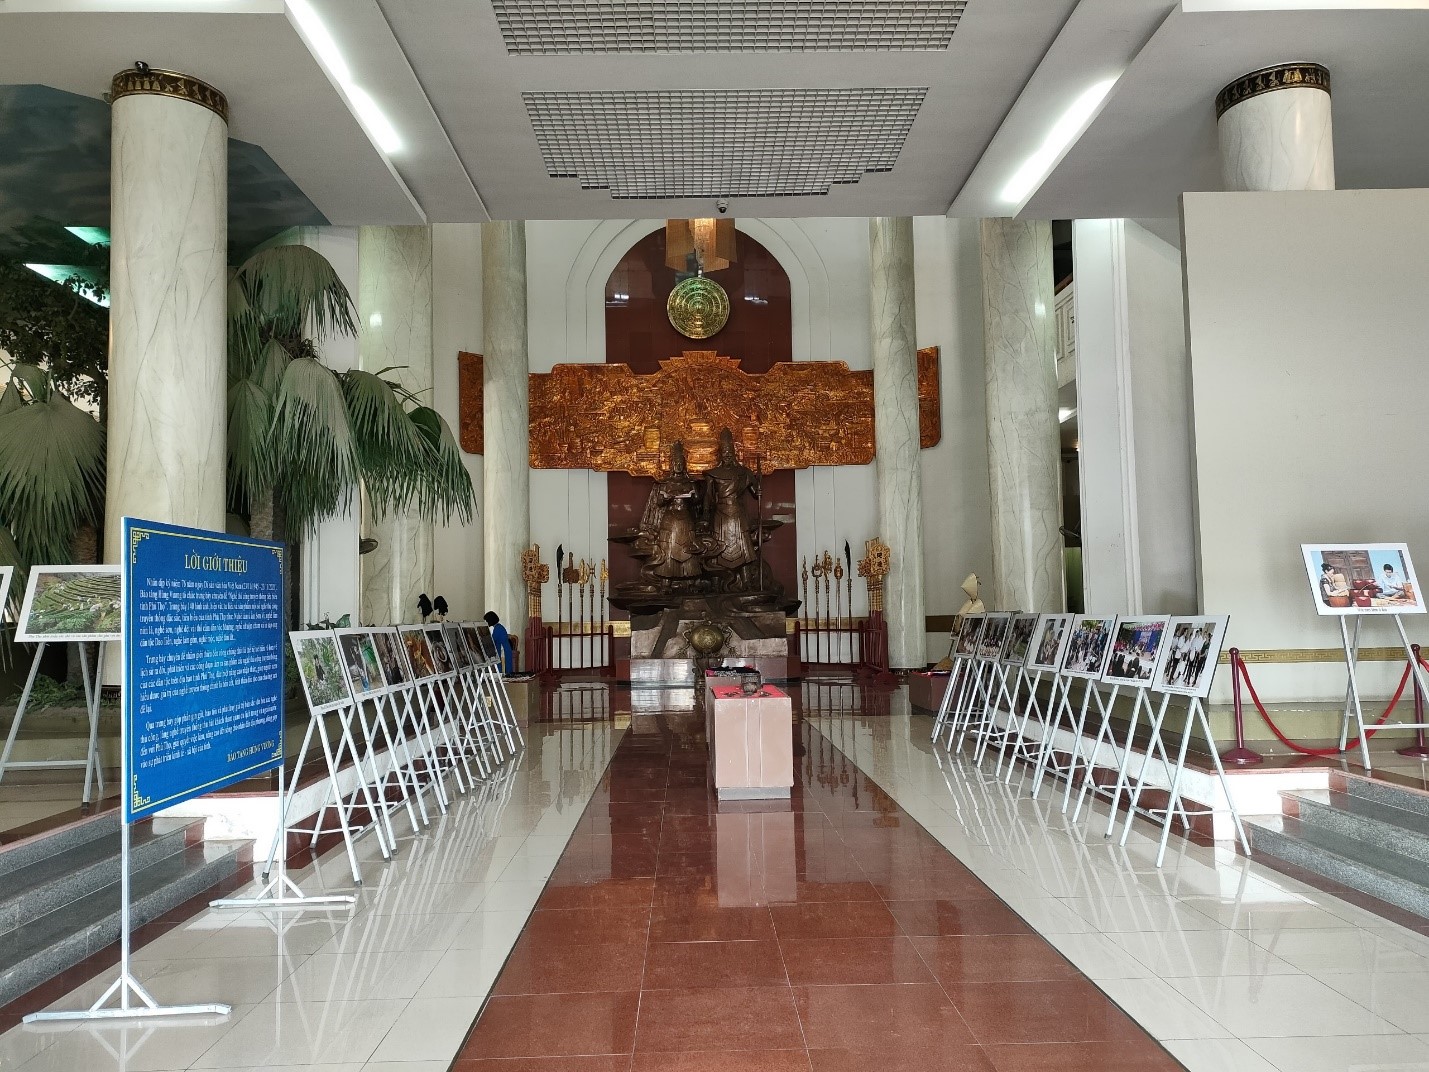 Bảo tàng Hùng Vương trưng bày chuyên đề “Nghề thủ công truyền thống tiêu biểu tỉnh Phú Thọ” nhân dịp kỷ niệm ngày Di sản văn hóa Việt Nam 23/11